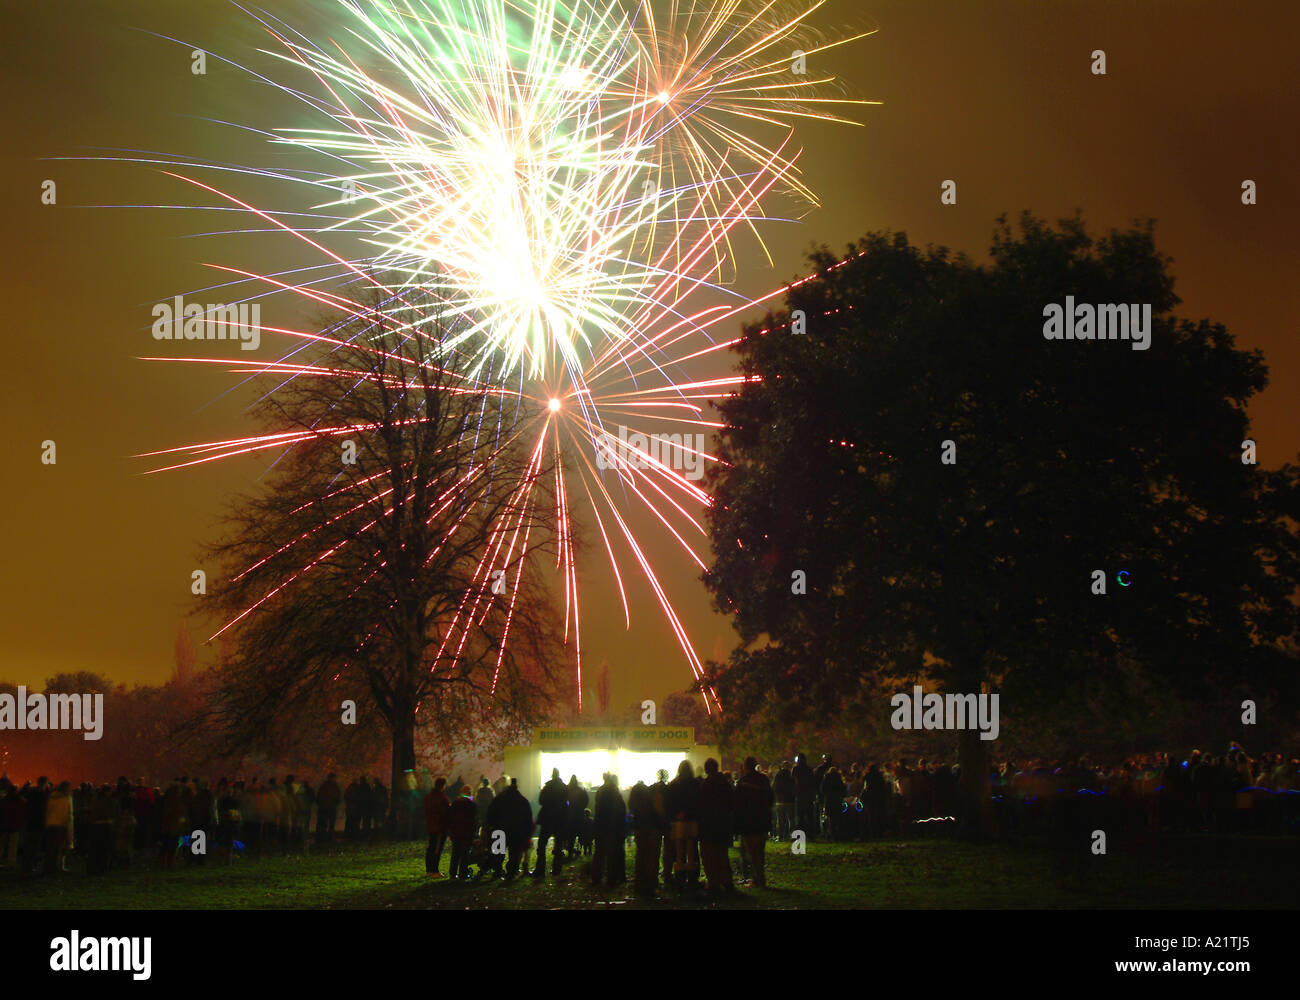 Feux d'artifice illuminent le ciel sur Verdin Park, Northwich, Cheshire, England, UK Banque D'Images